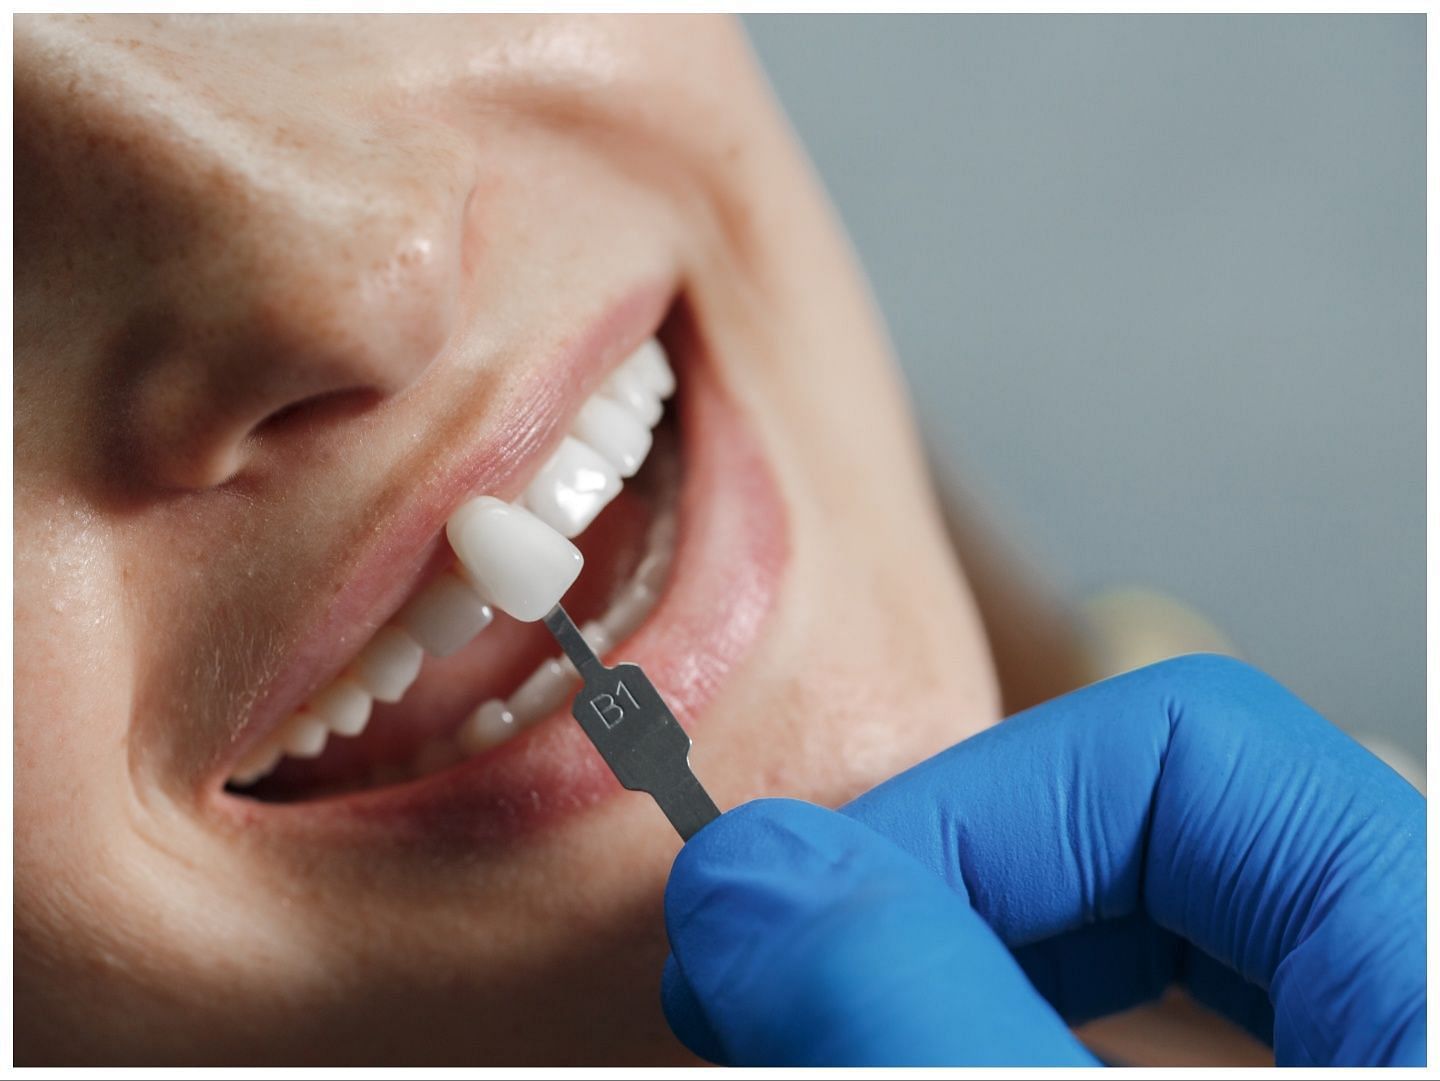 Tooth Veneers - Is It Worth the Smile? (Image via Freepik/ Holiak)